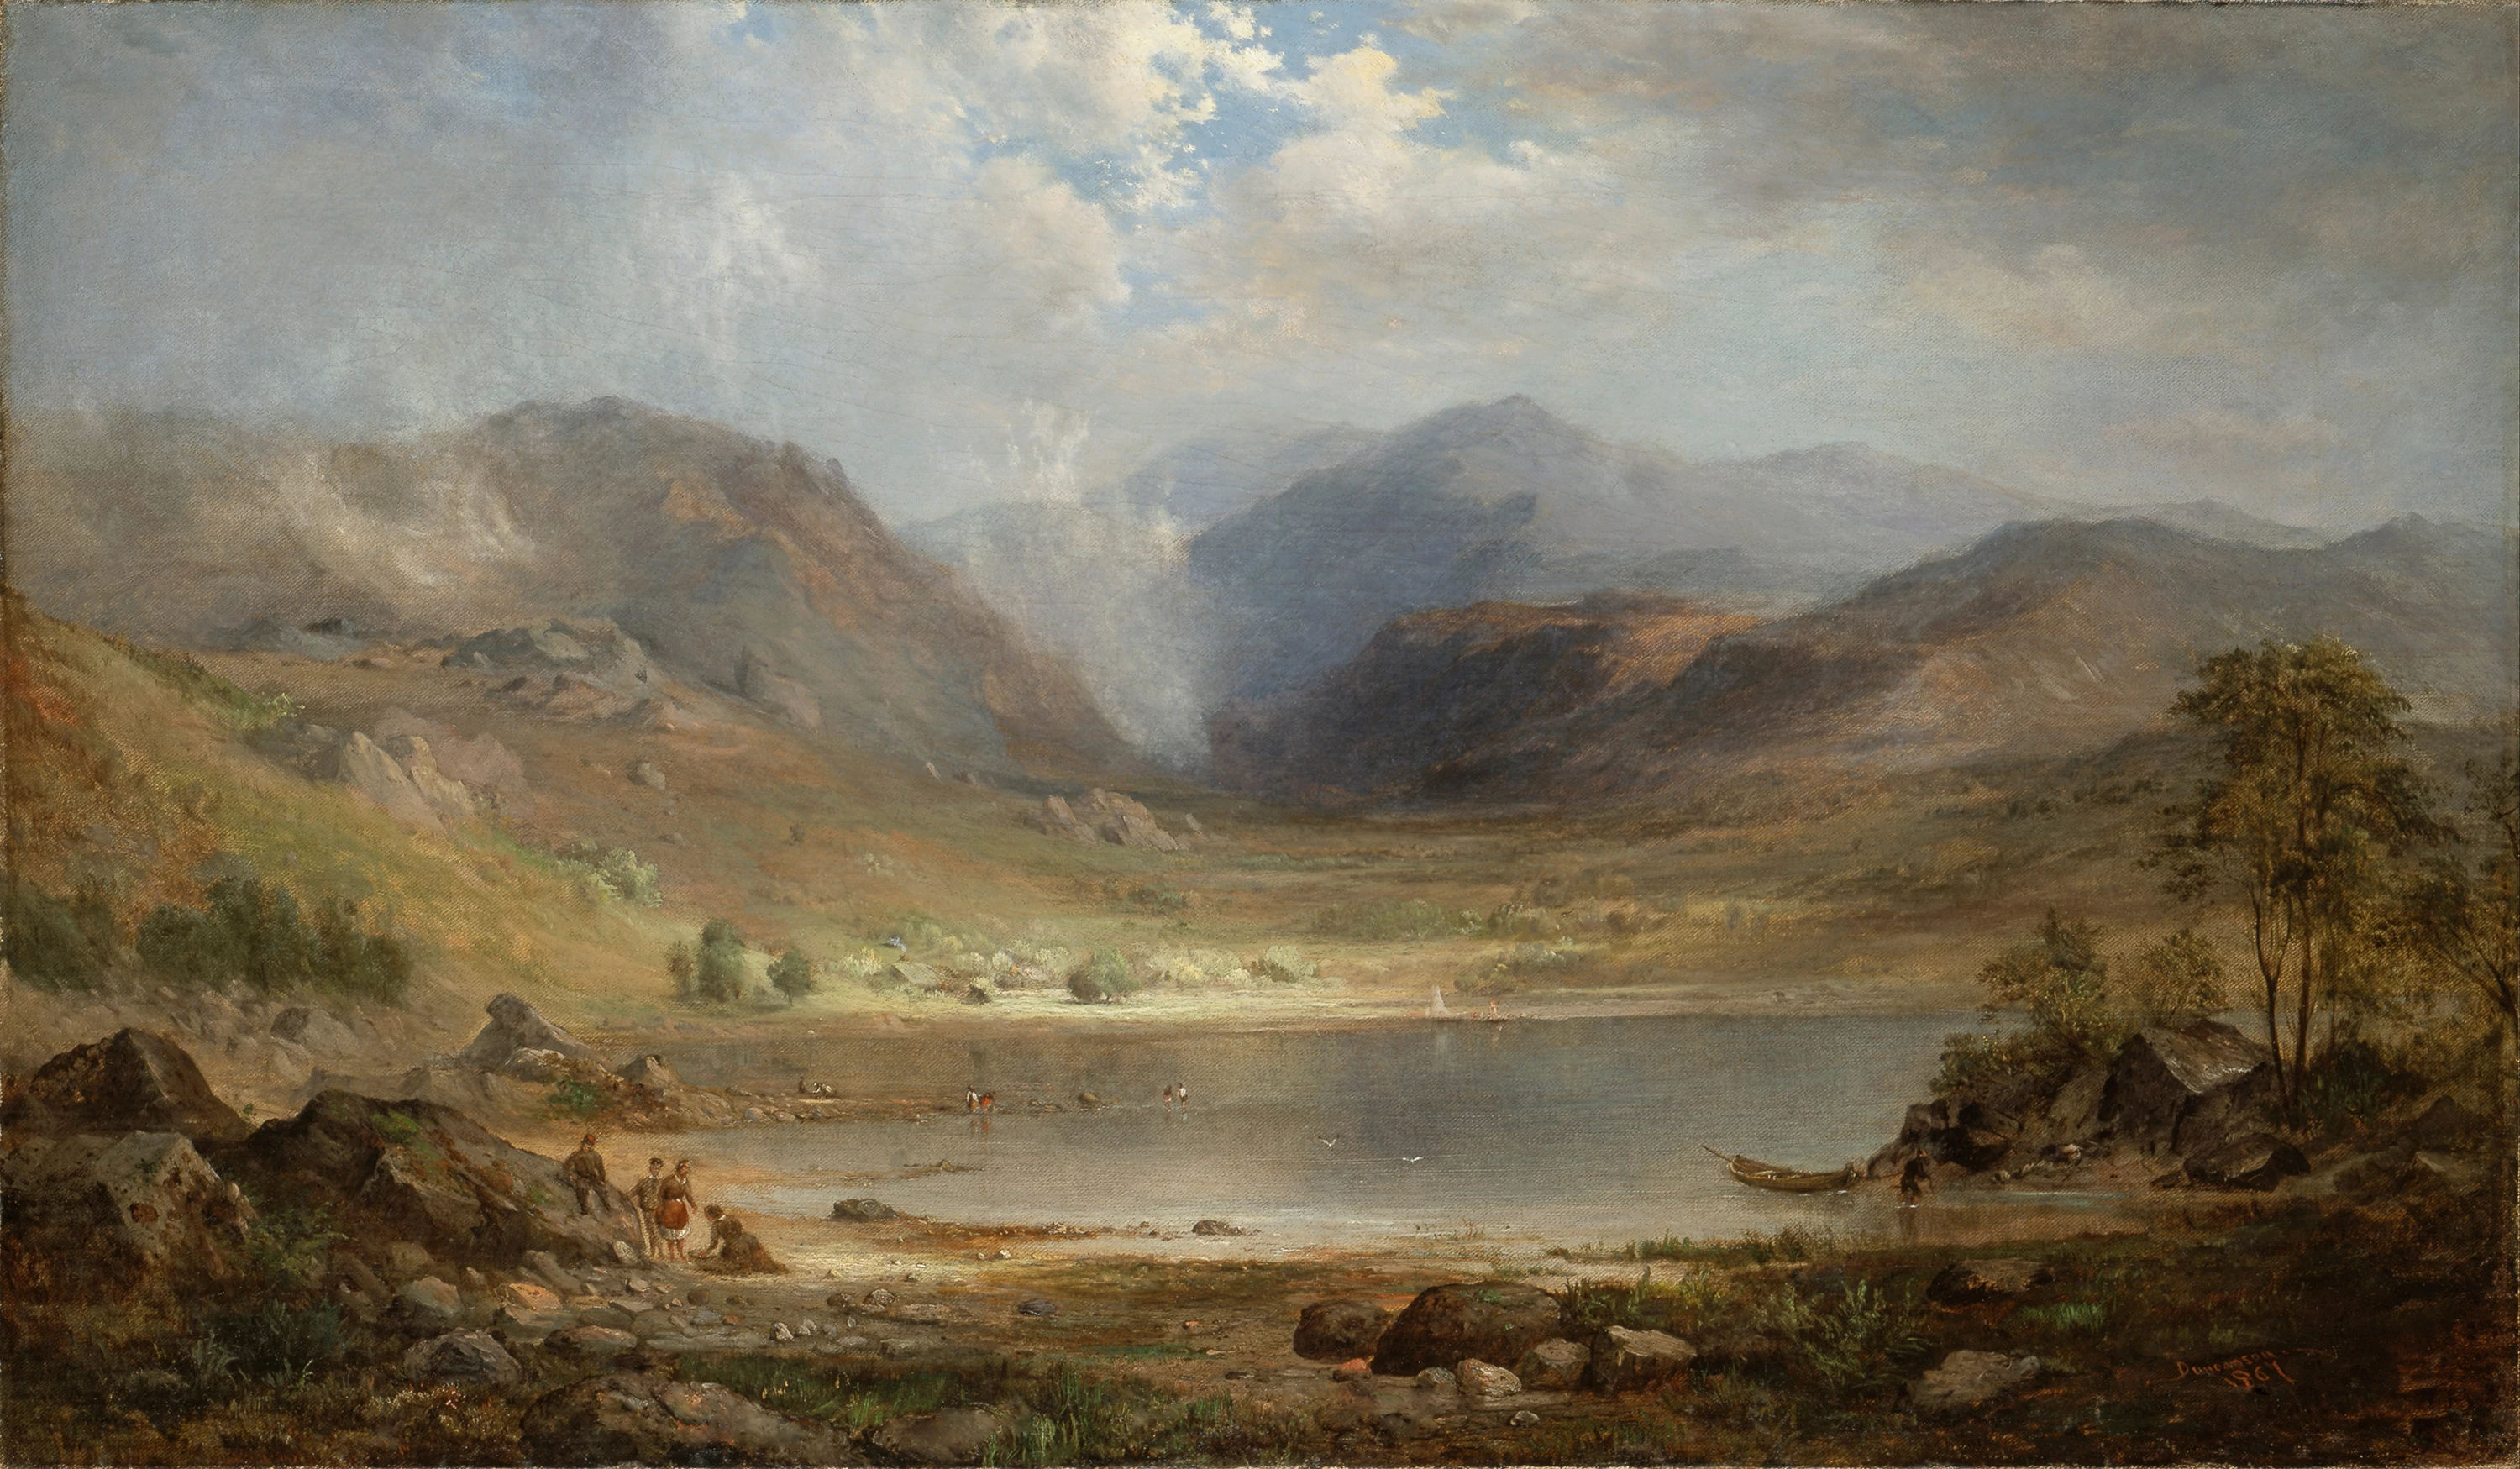 Loch Long, Robert S. Duncanson